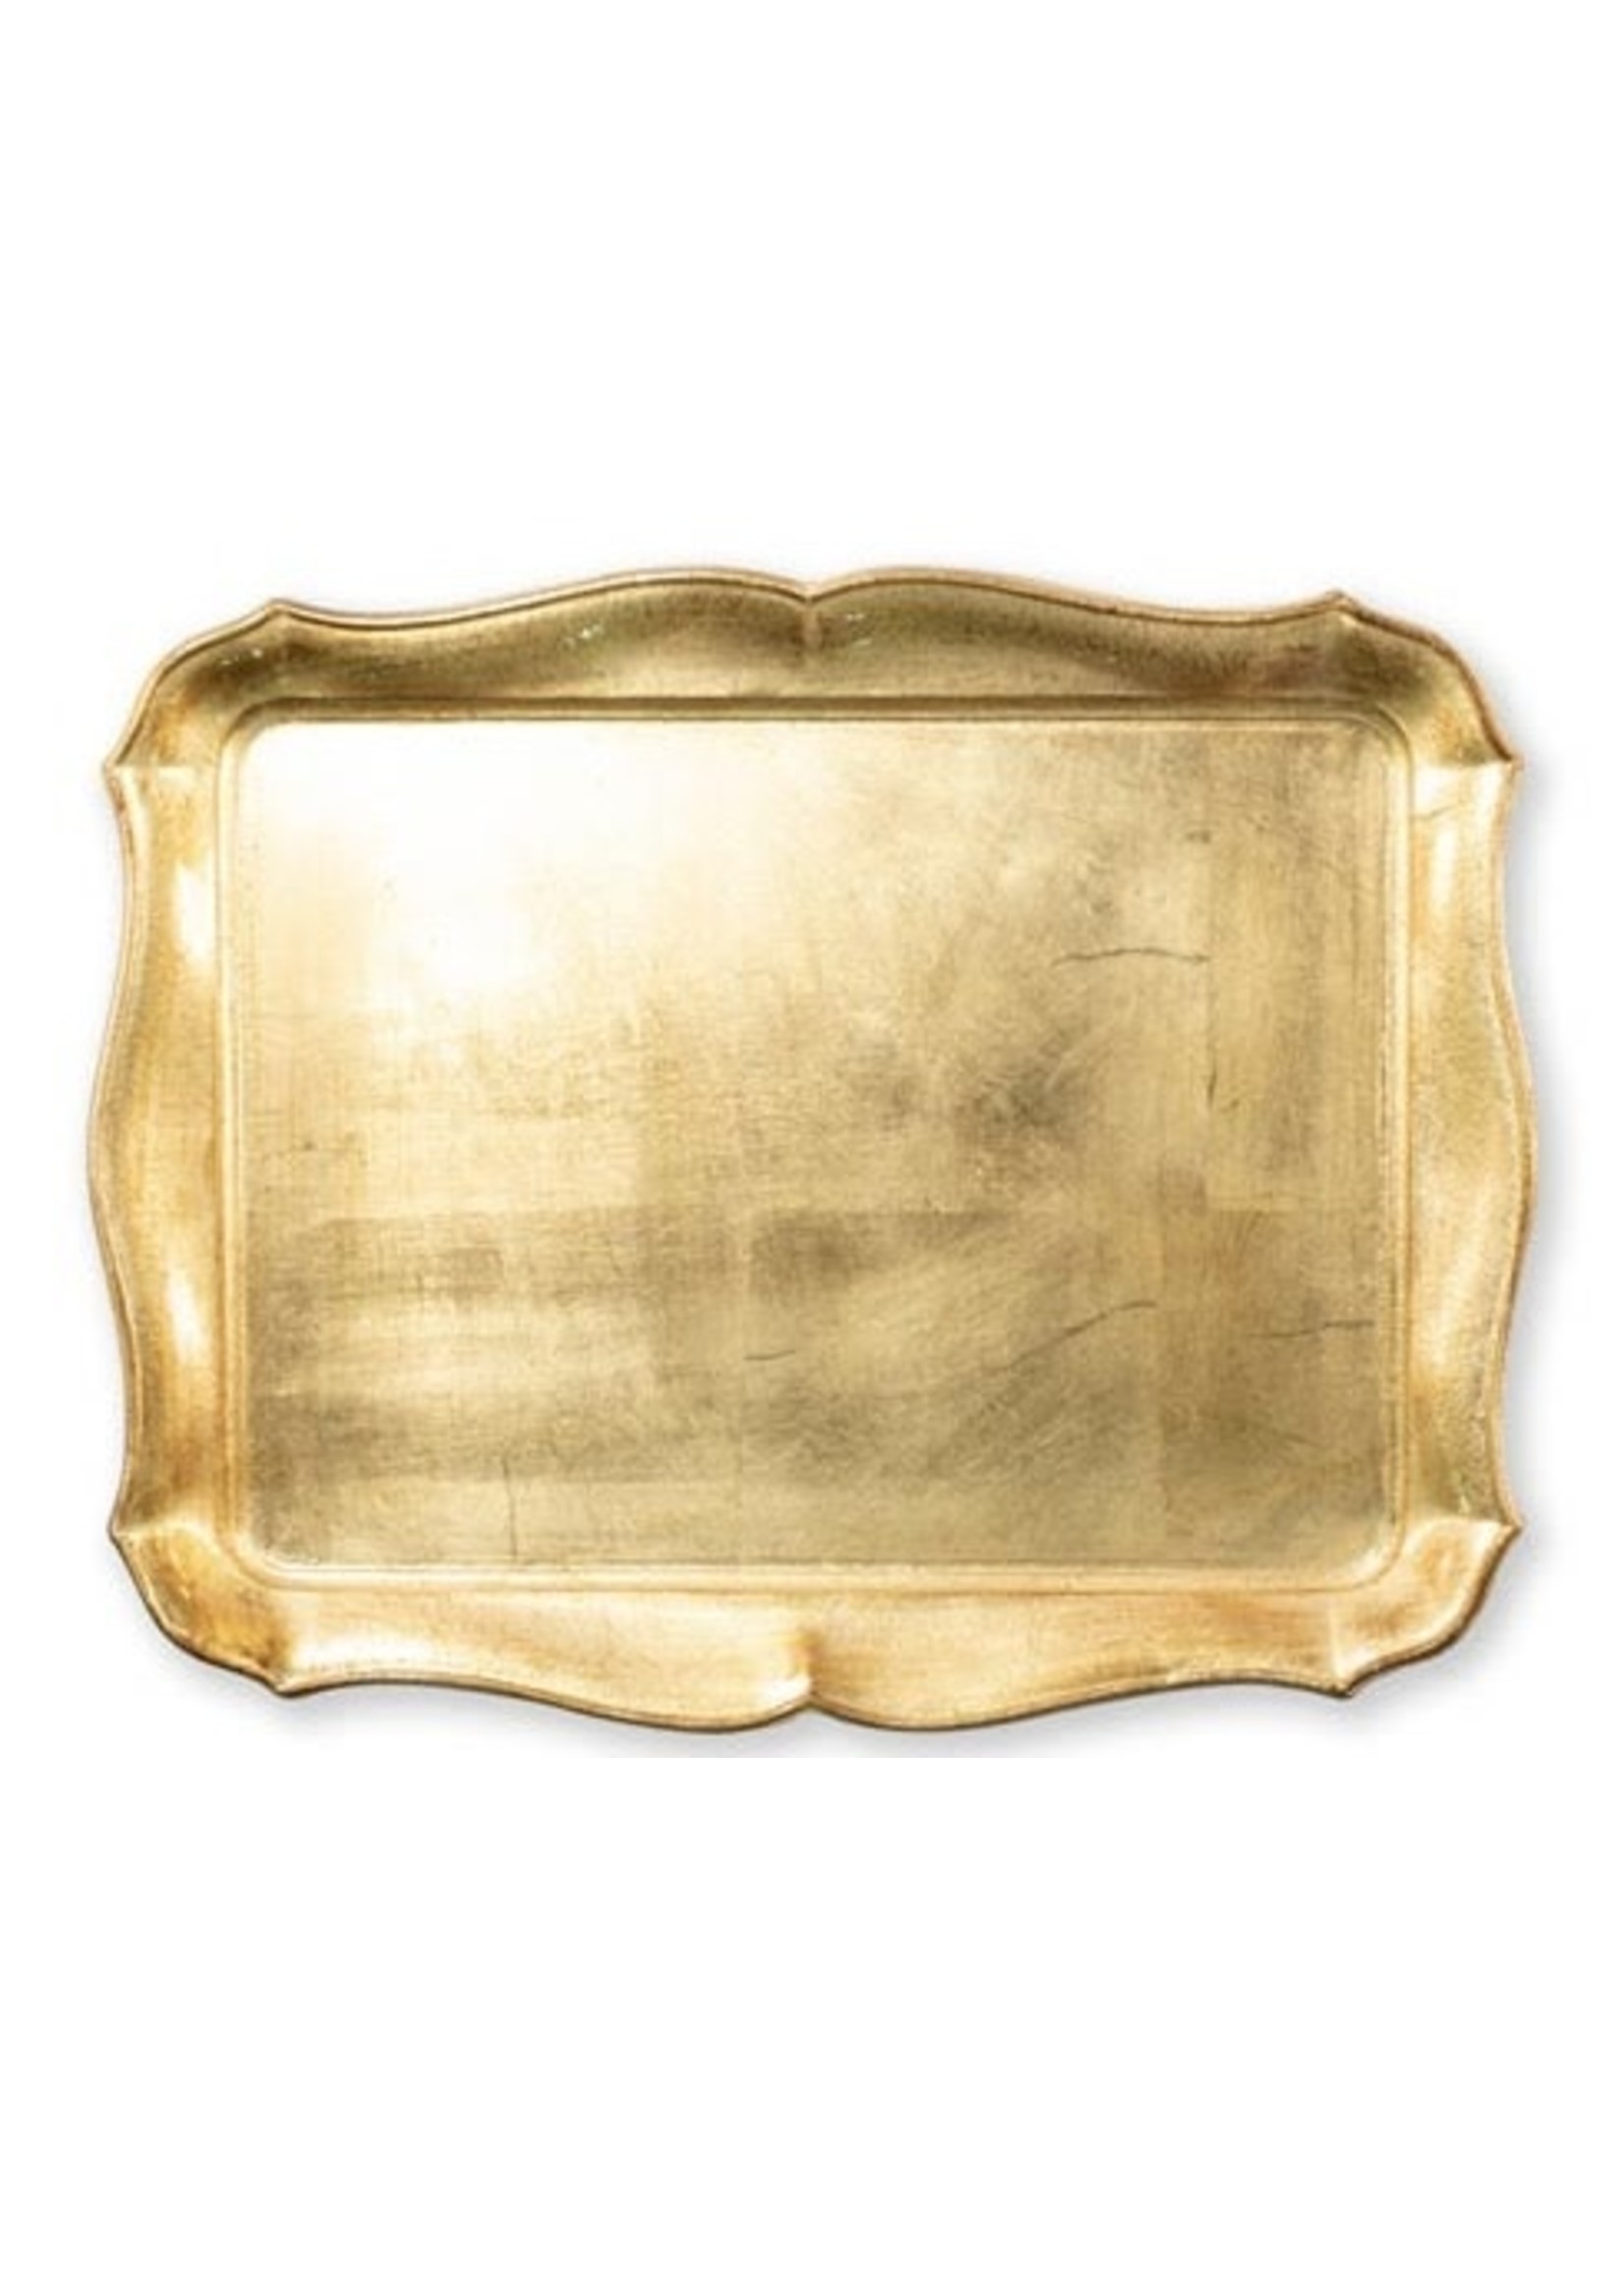 VIETRI Florentine Wooden Accessories Gold Rectangular Tray